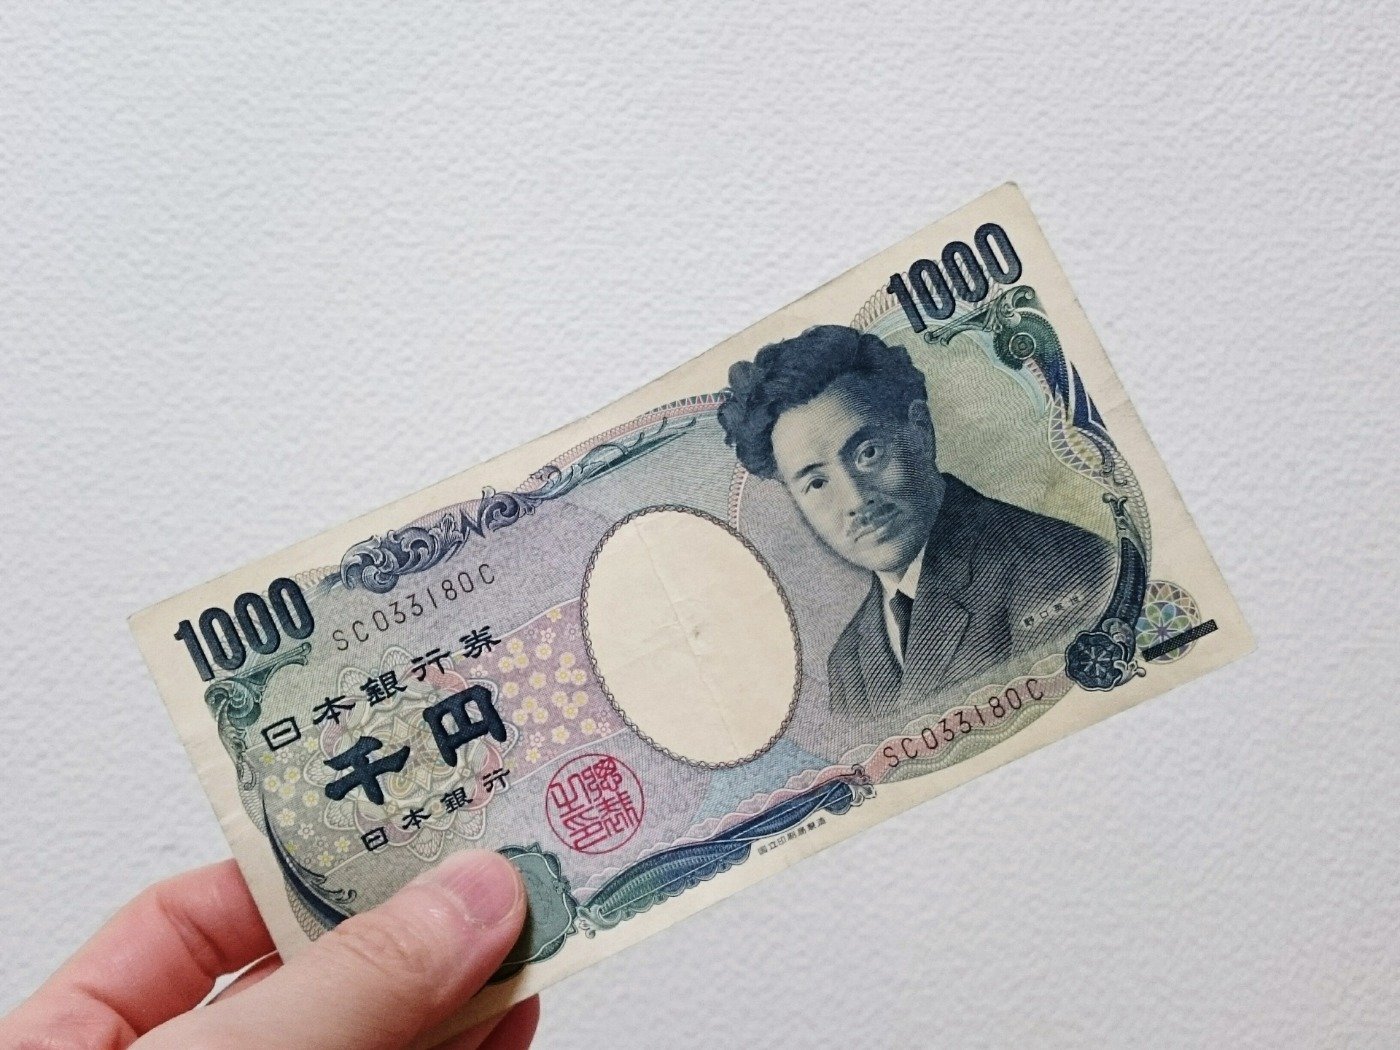 Yên nhật là đồng tiền mang trong mình nhiều điều kỳ diệu và thú vị. Hãy xem hình ảnh để khám phá những bí mật hấp dẫn về đồng tiền của Nhật Bản.